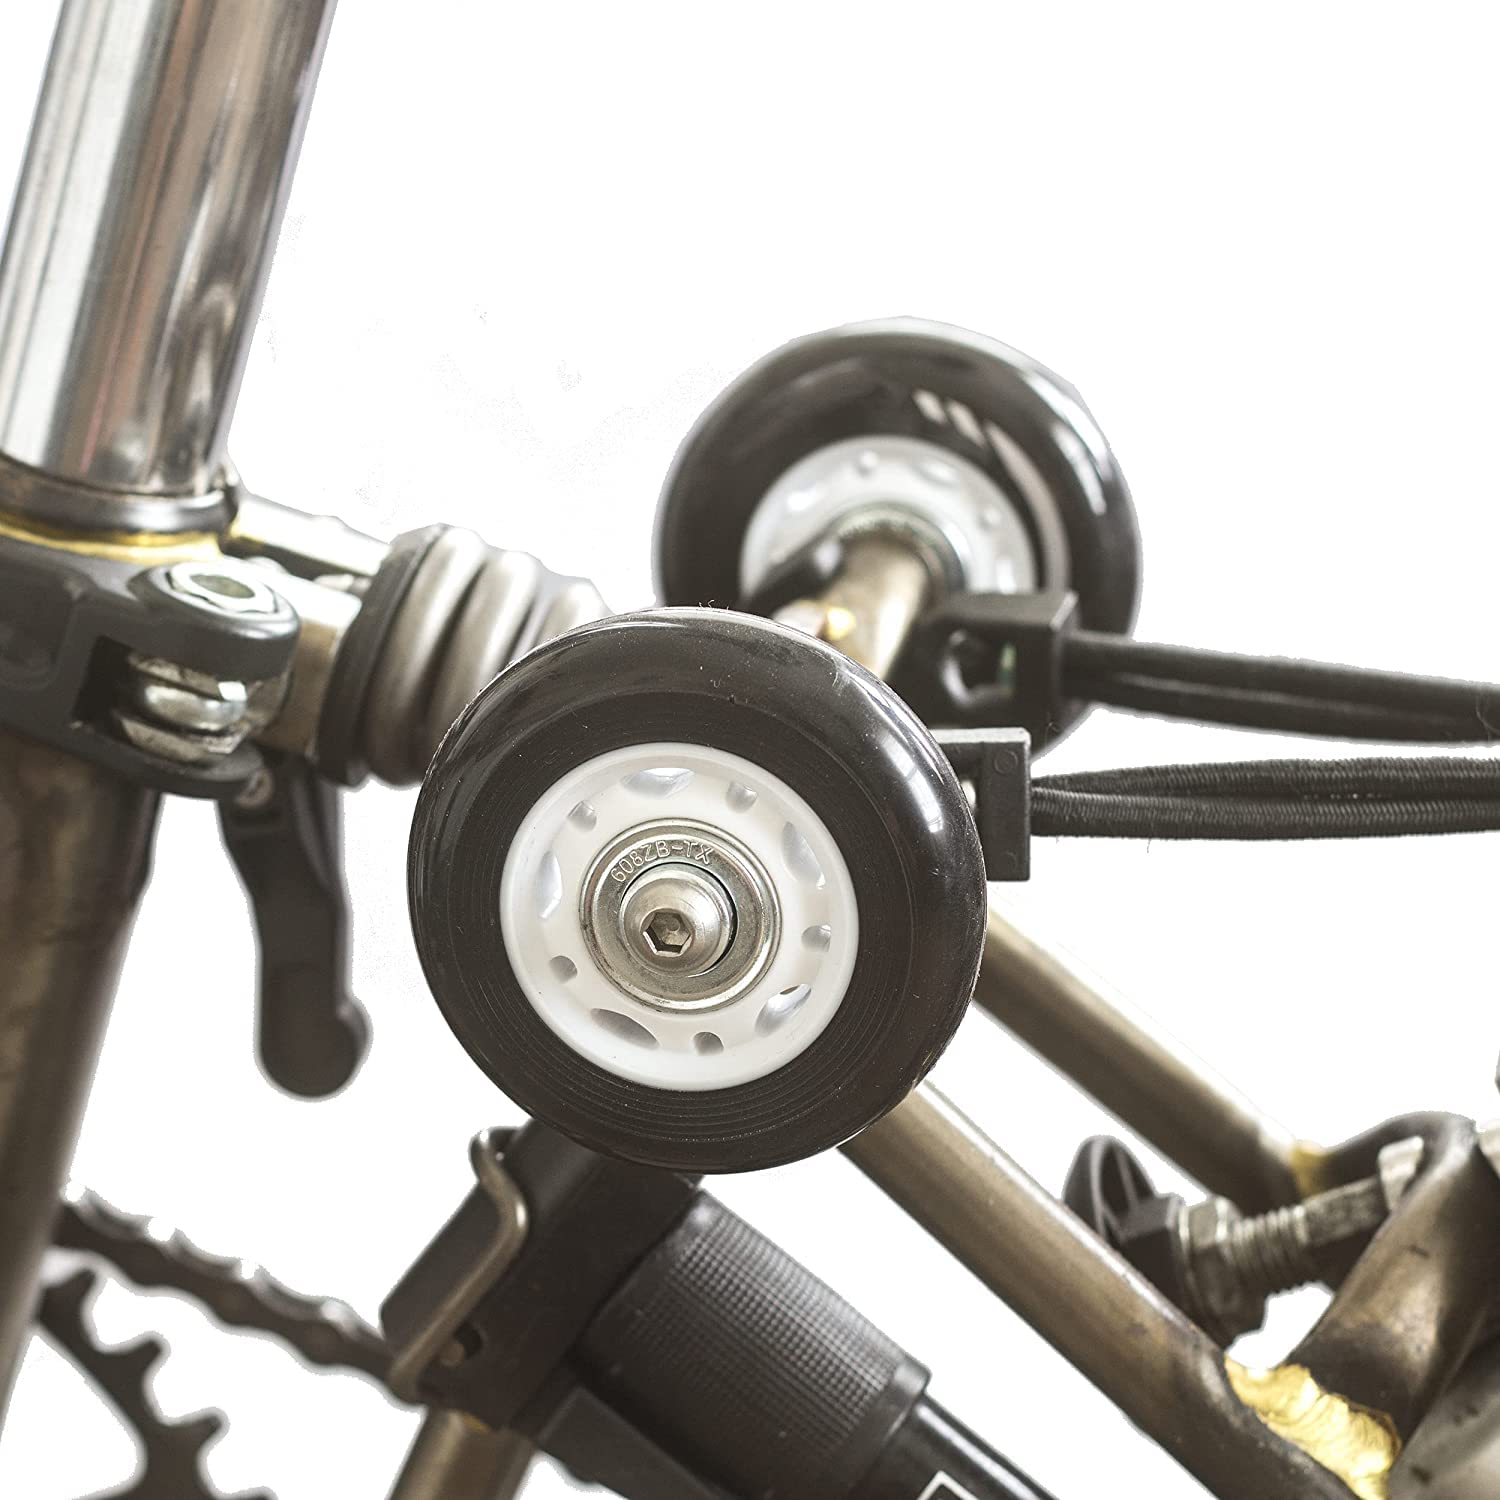 4 x 63 mm breite Easy Wheels für Brompton Faltrad (2 Paar) von London Craftwork